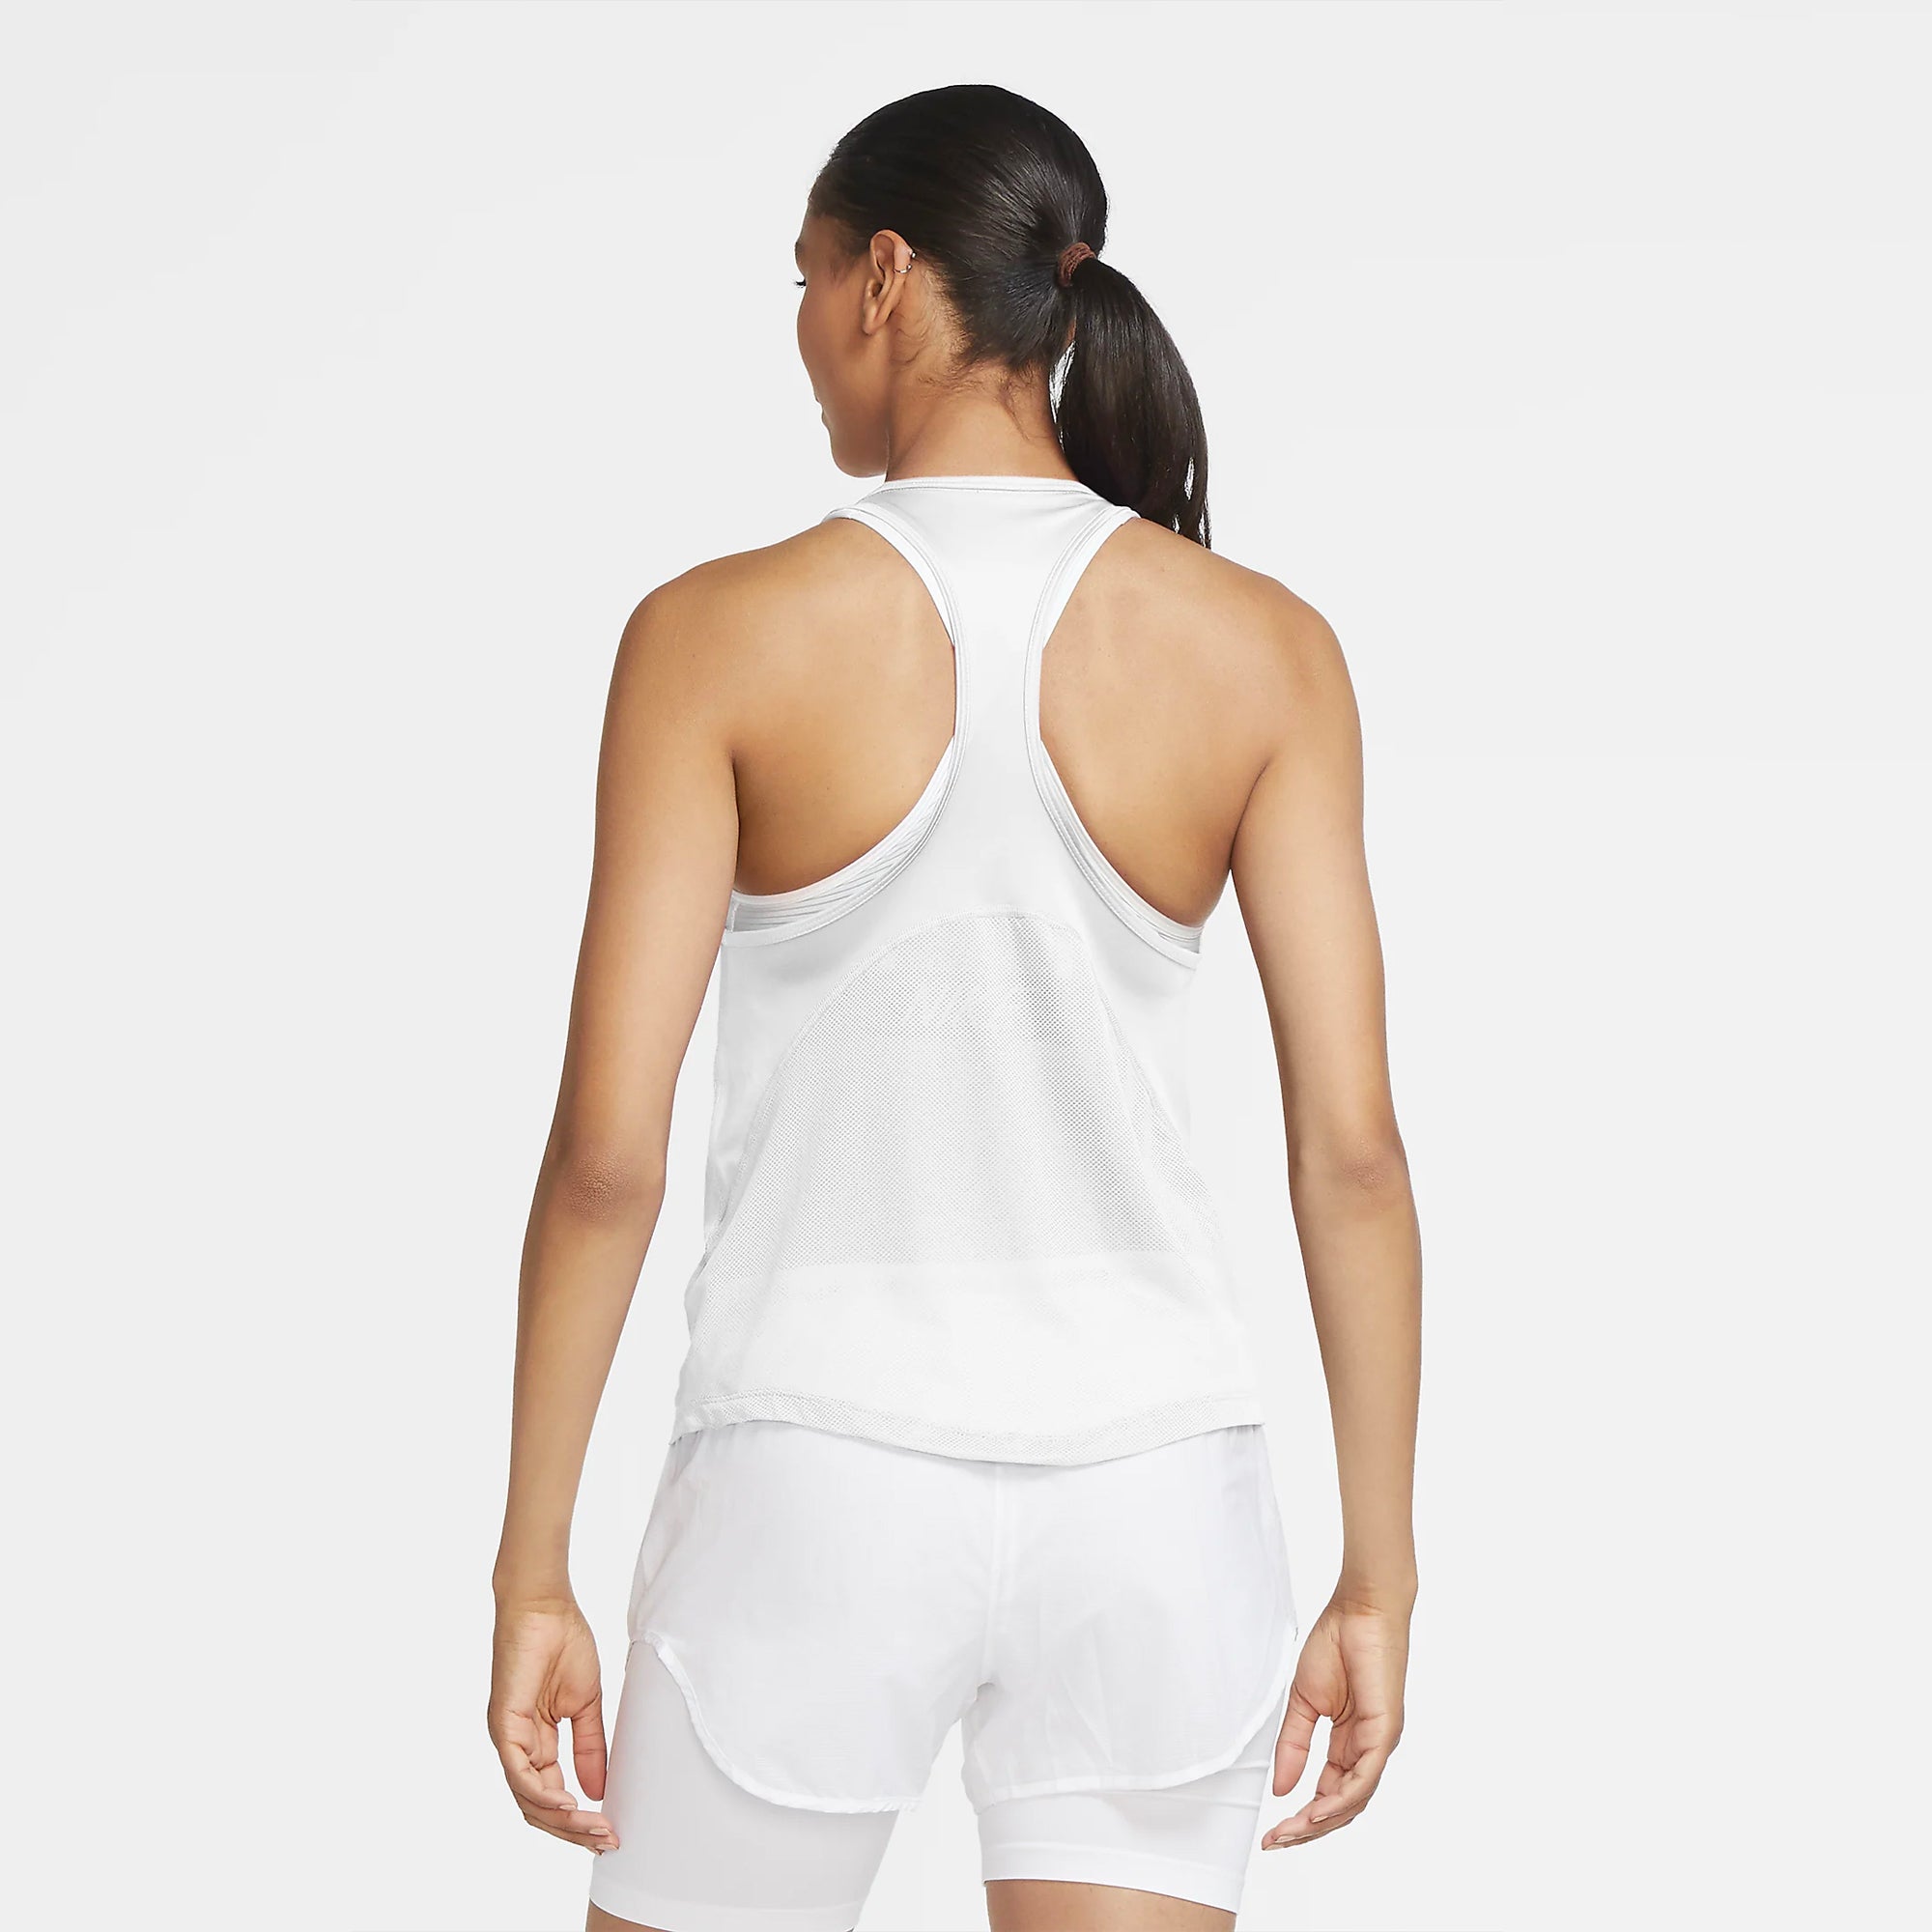 Nike Women's Miler Running Tank Top, Medium, White